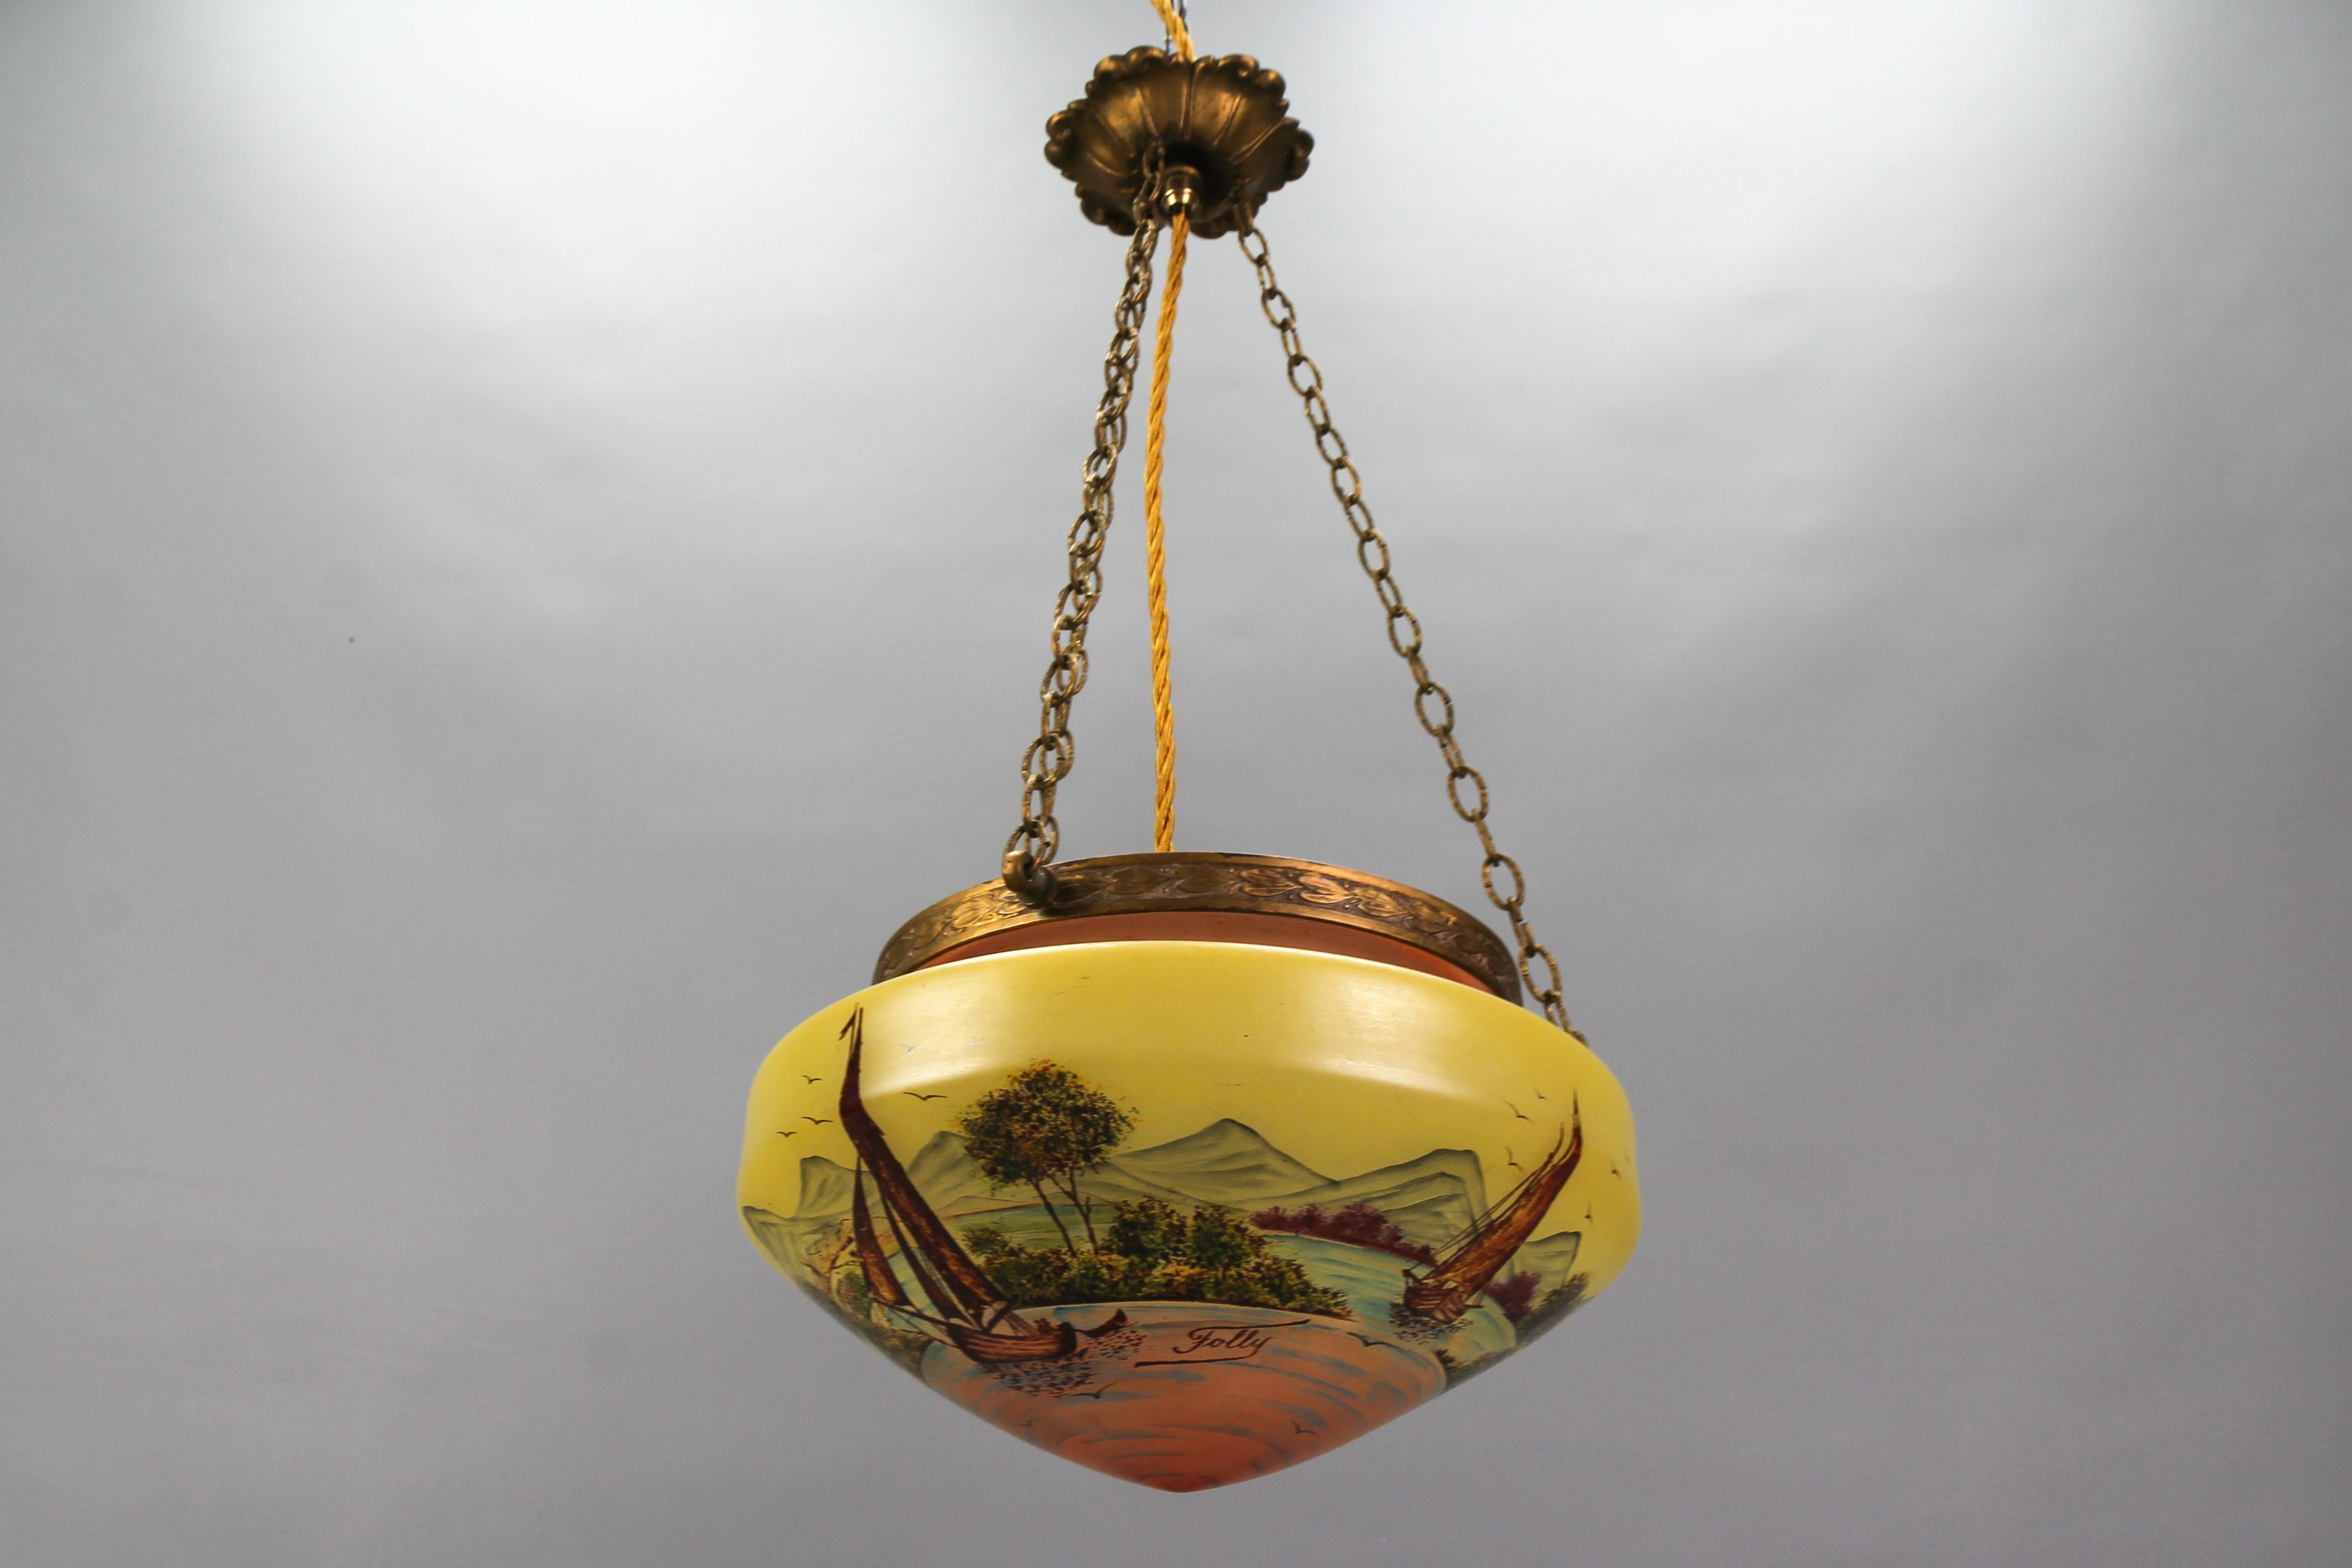 Neoklassizistische Pendelleuchte aus Messing und Glas mit handgemalter Landschaft aus den 1920er Jahren.
Diese atemberaubende Pendelleuchte im neoklassischen Stil hat einen Lampenschirm aus gelbem und blasslachsfarbenem Glas - eine ovale Schale. Der